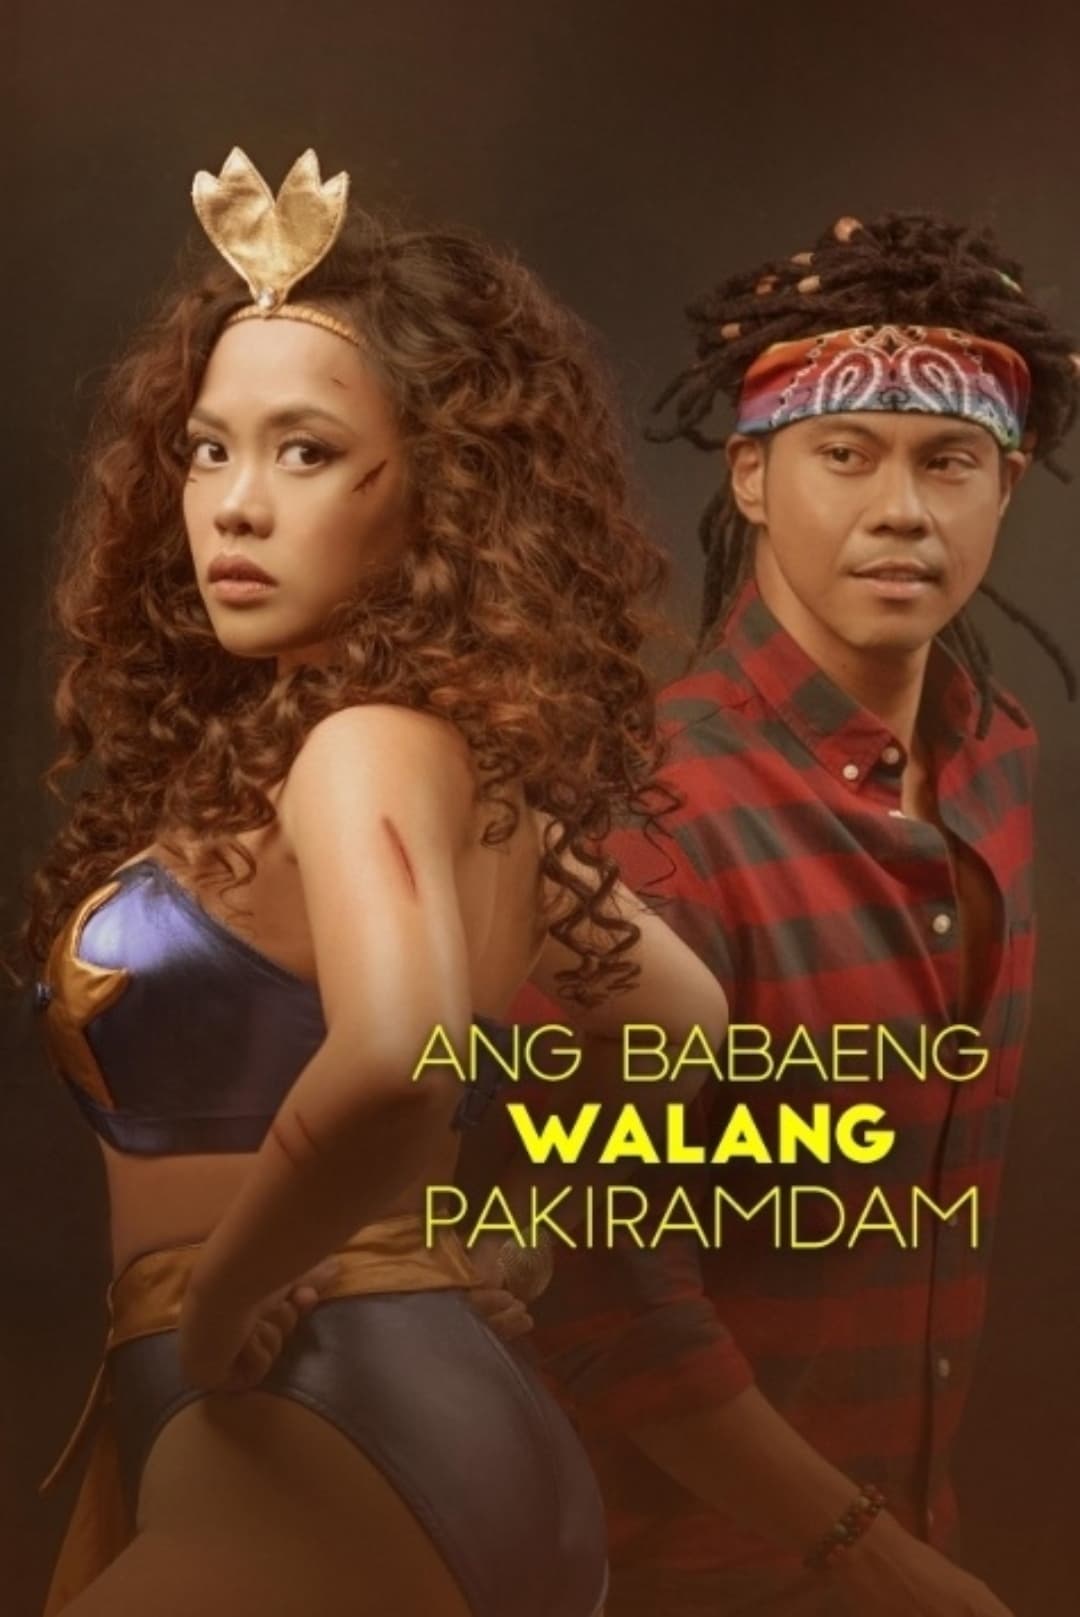 Ang Babaeng Walang Pakiramdam (2021) poster - Allmovieland.com